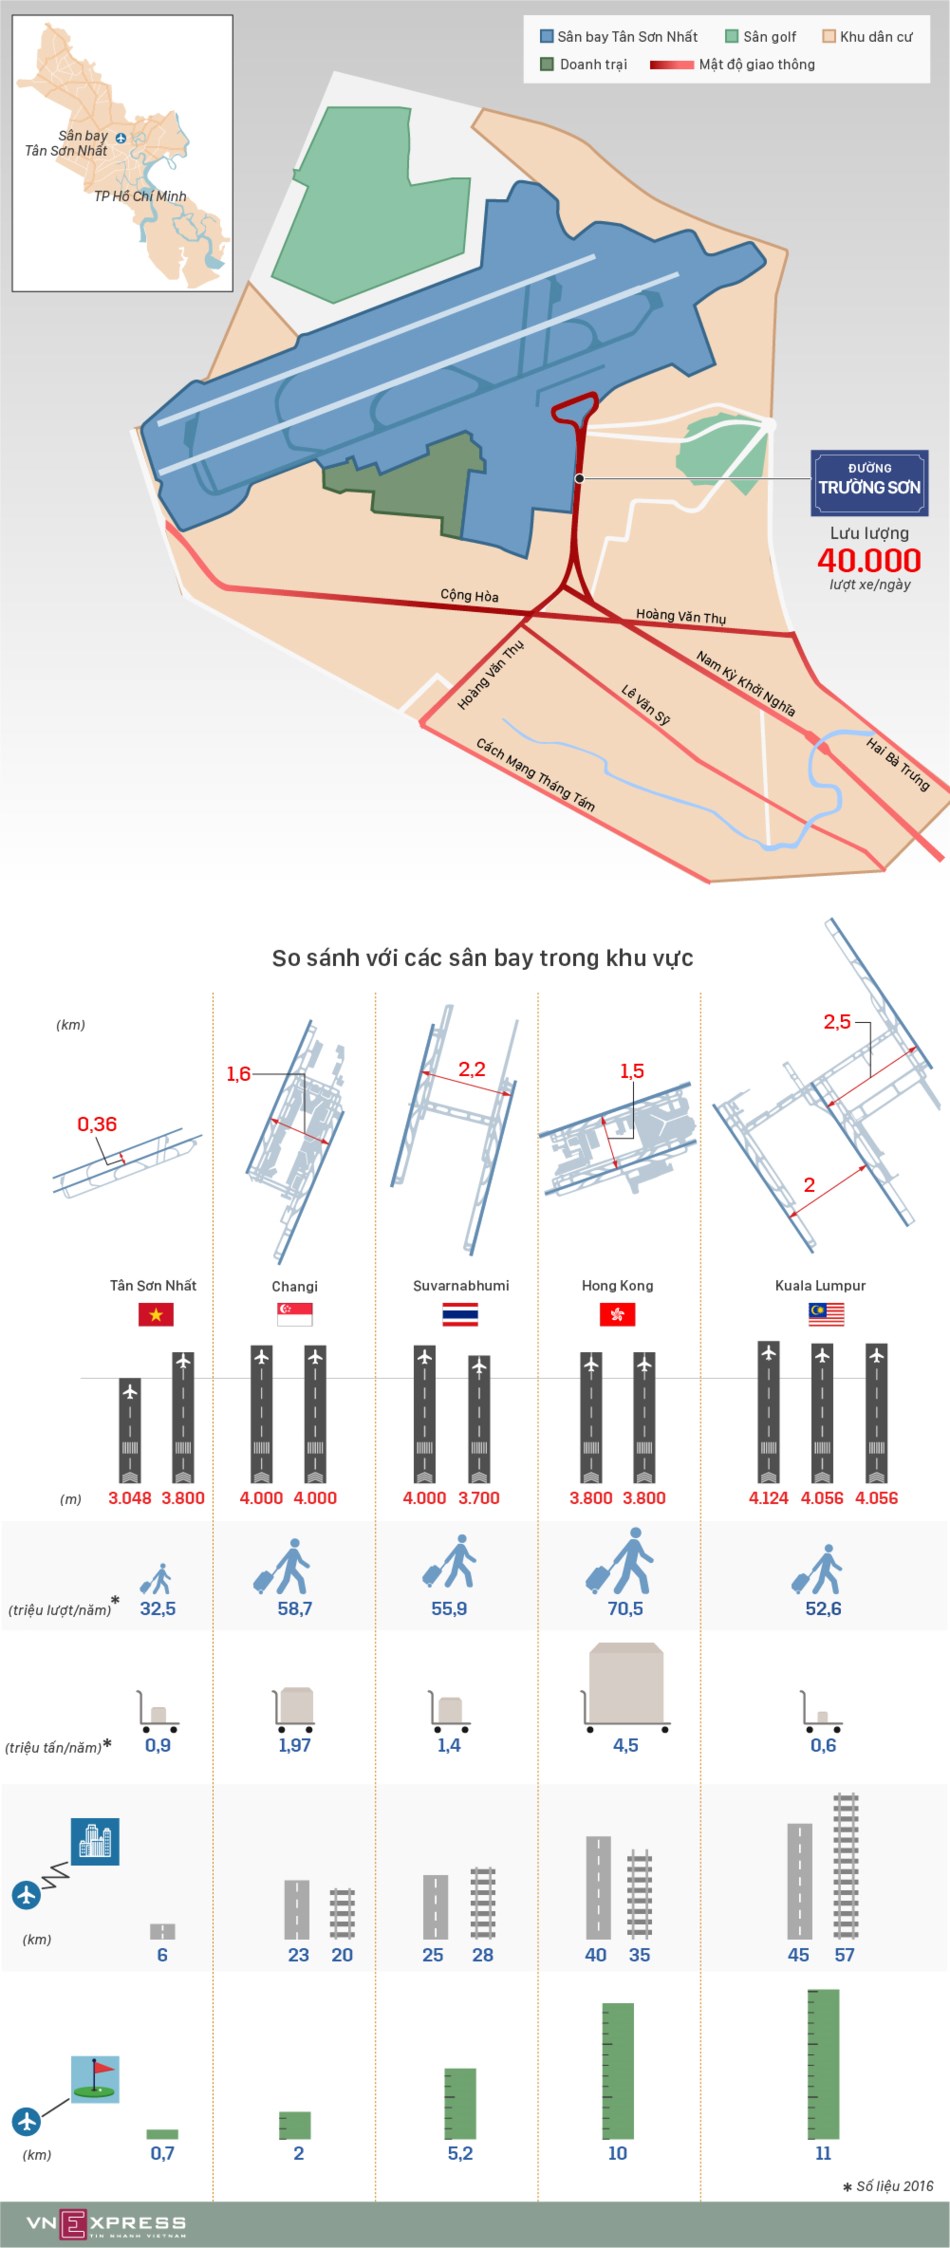 So sánh Tân Sơn Nhất với các cảng hàng không khu vực - 1